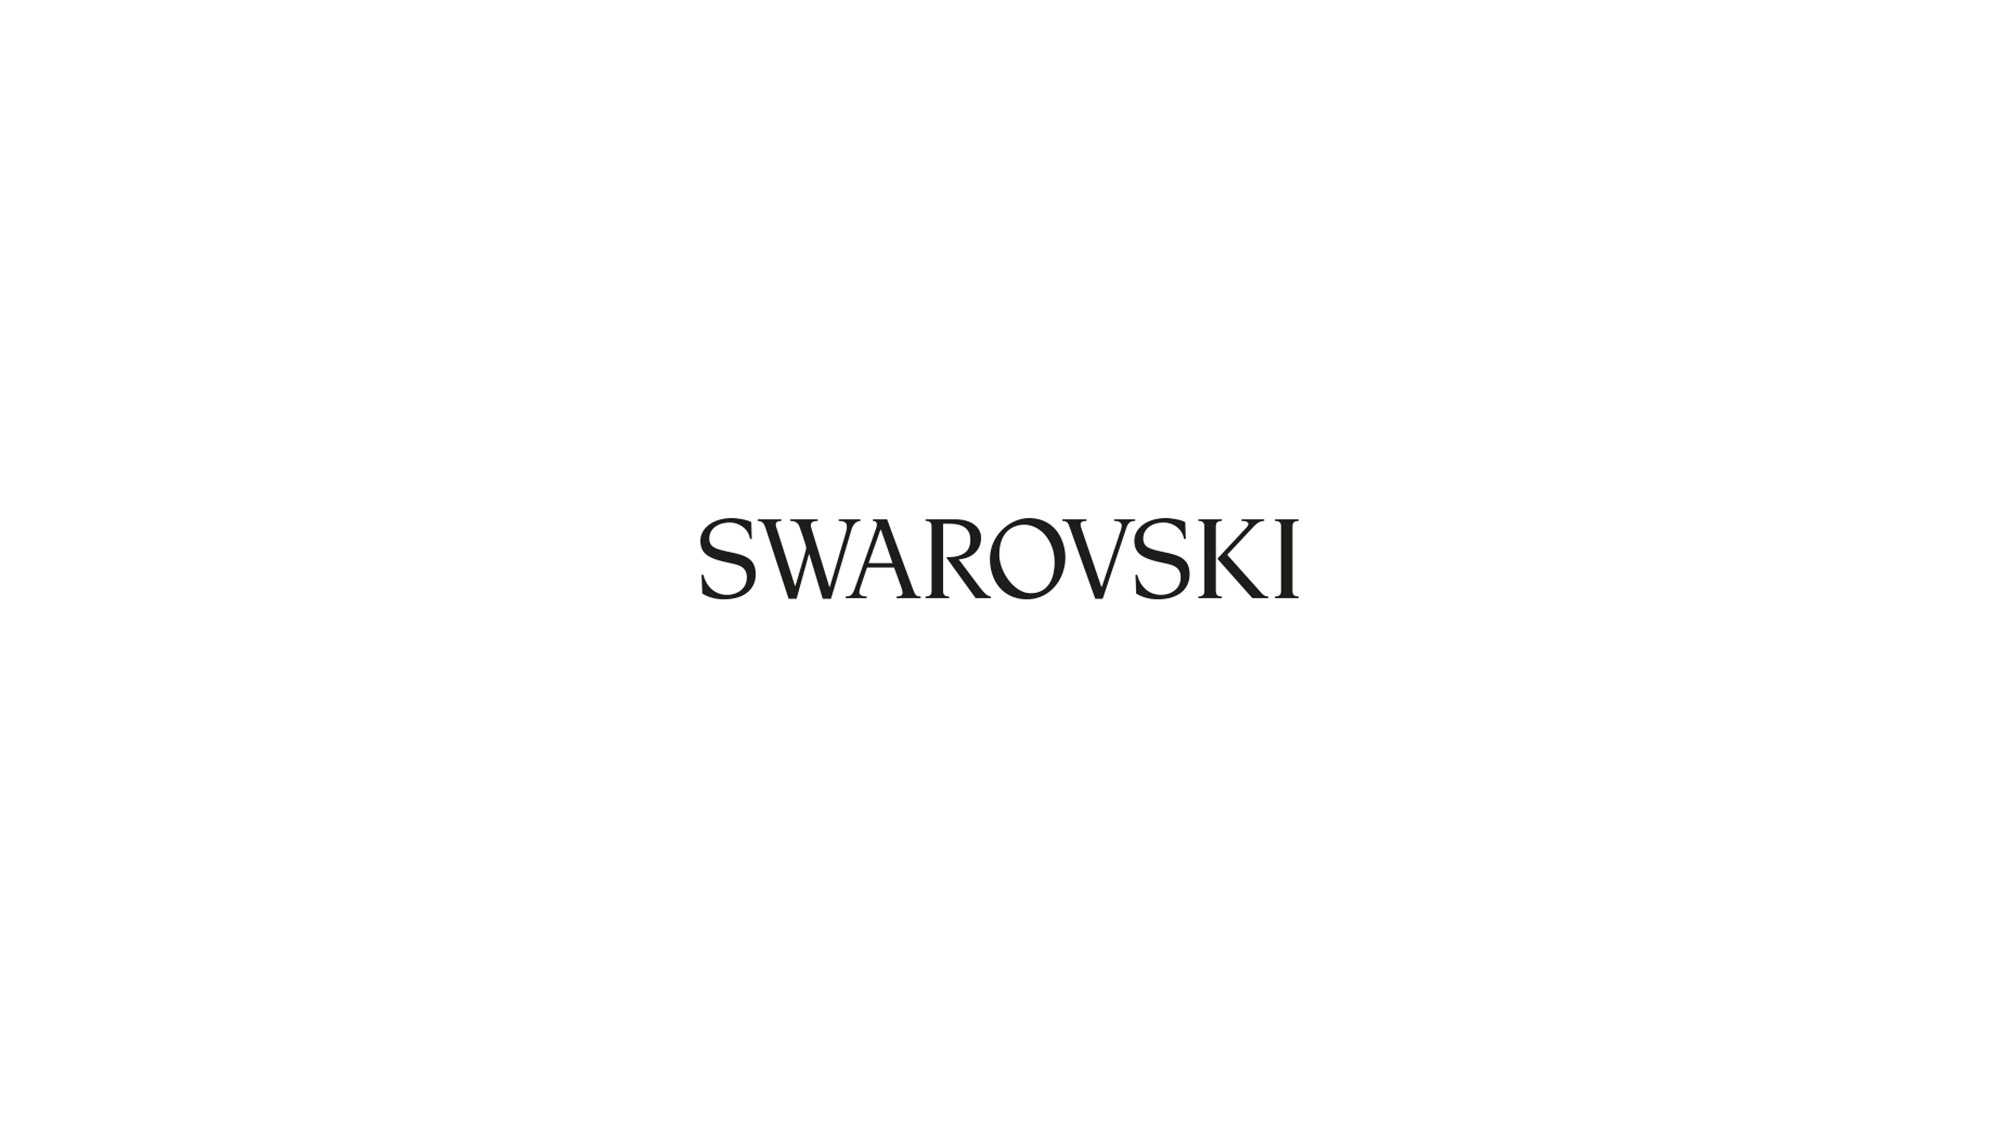 Das Bild zeigt einen weißen Hintergrund mit der Aufschrift Swarovski. Diese ist gleichzeitig das Logo der Marke. Das Bild dient als Sliderbild für den Portfolioeintrag Swarovski Produktfilm von Panda Pictures.